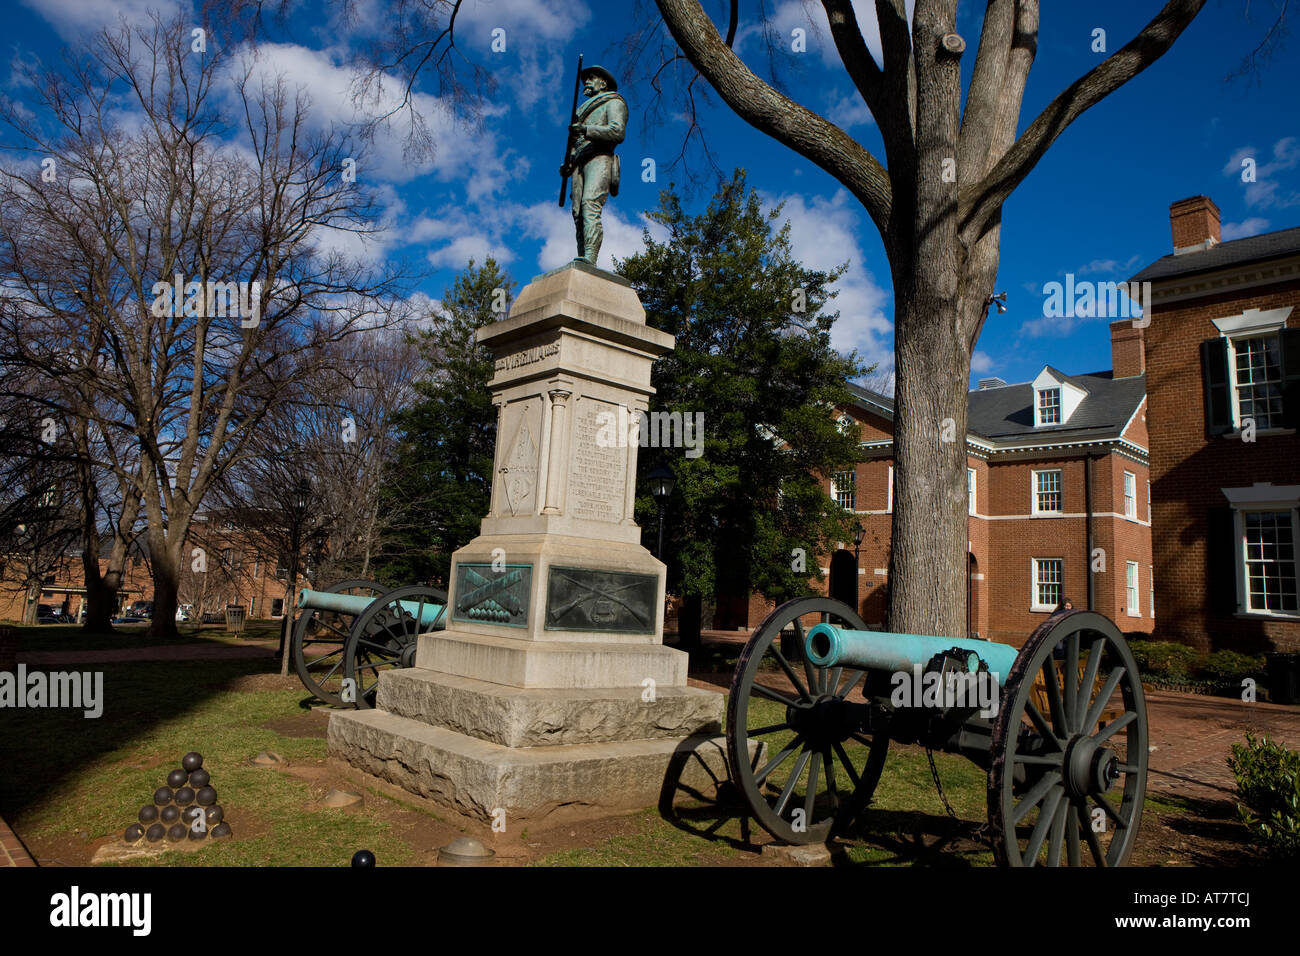 La statue d'un soldat confédéré à côté de deux canons de la guerre civile se trouve en face du Palais de Charlottesville Albemarle Co. Banque D'Images